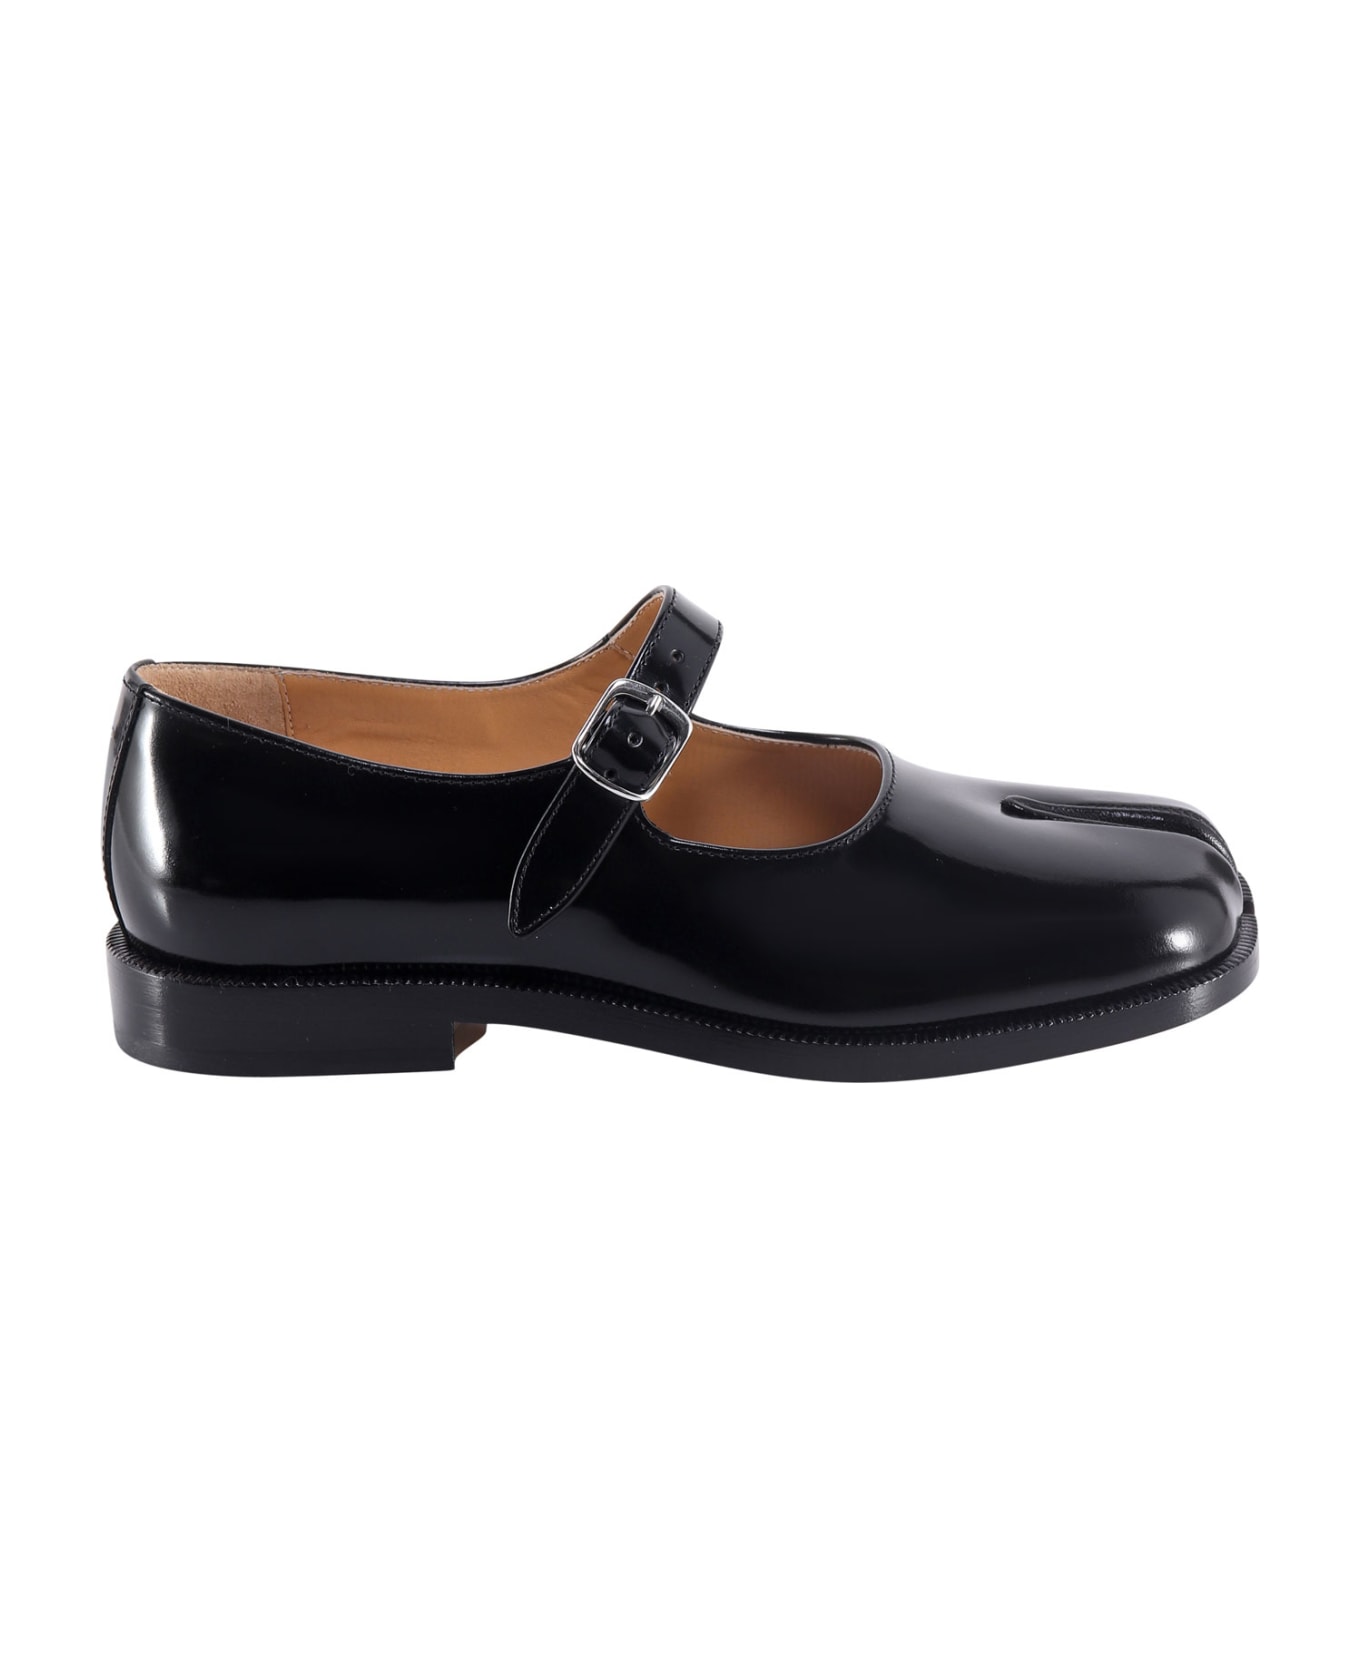 Maison Margiela Tabi Leather Mary Jane Shoes - Black